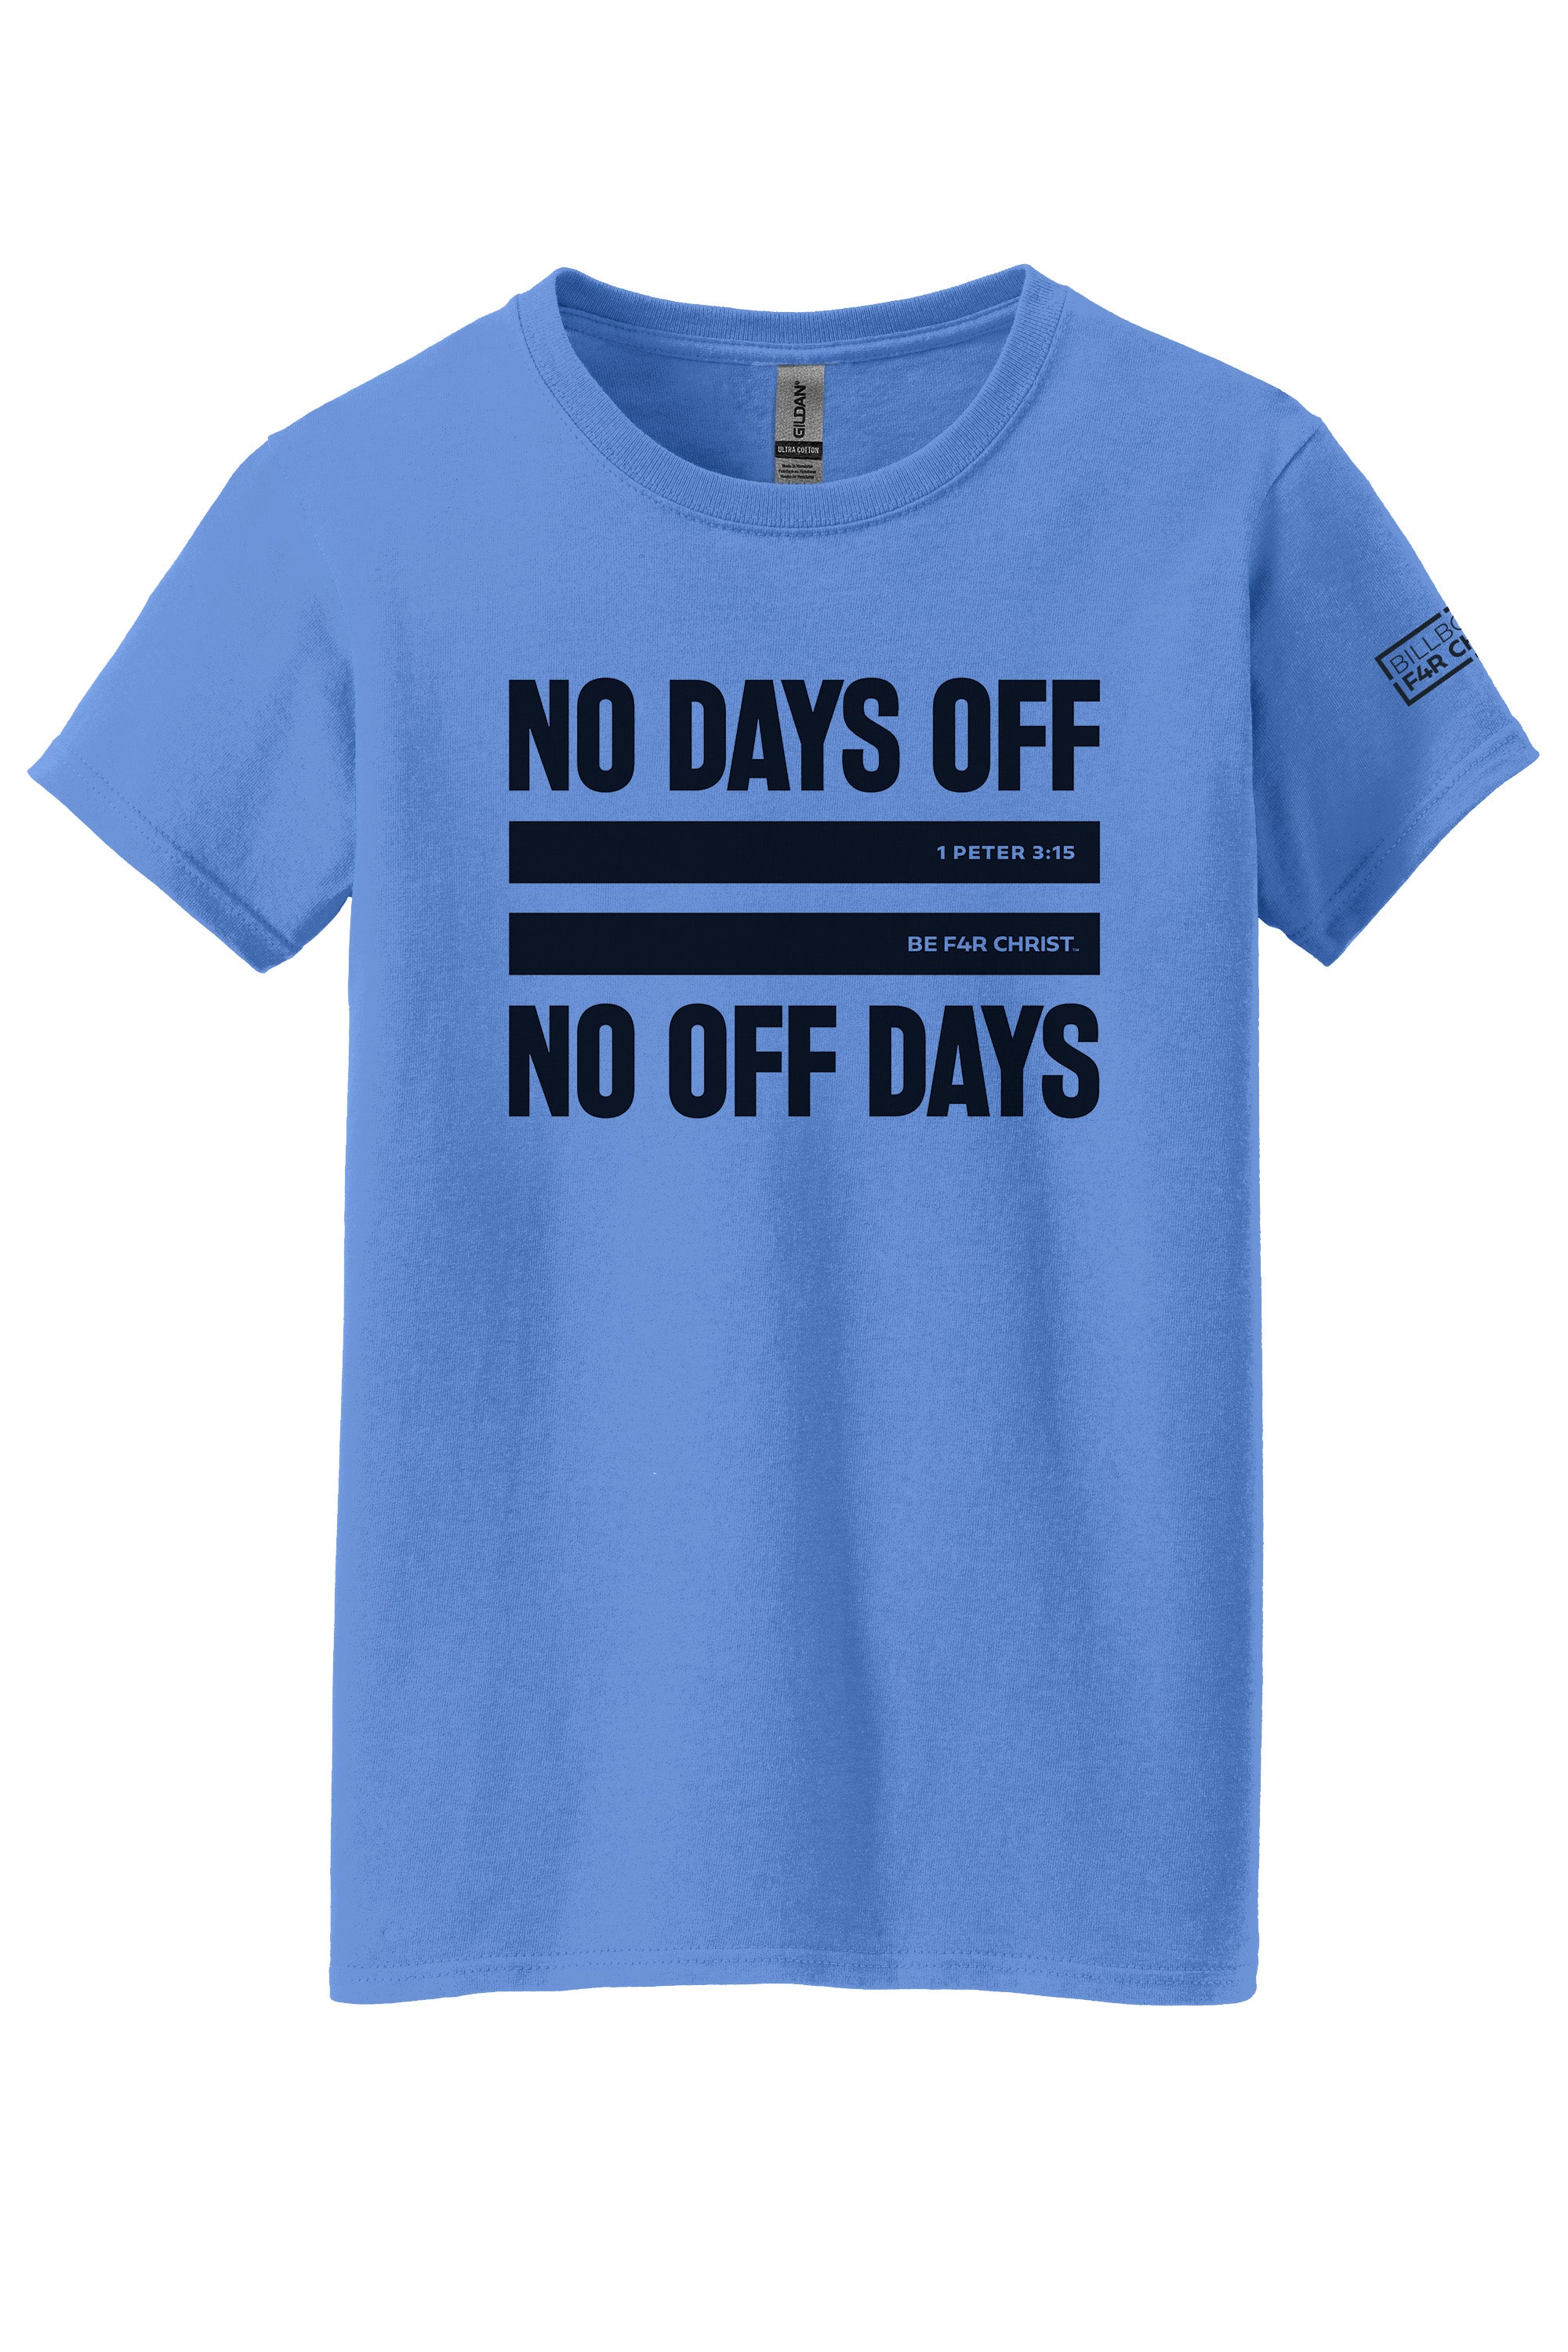 No Days Off Women's T-Shirt